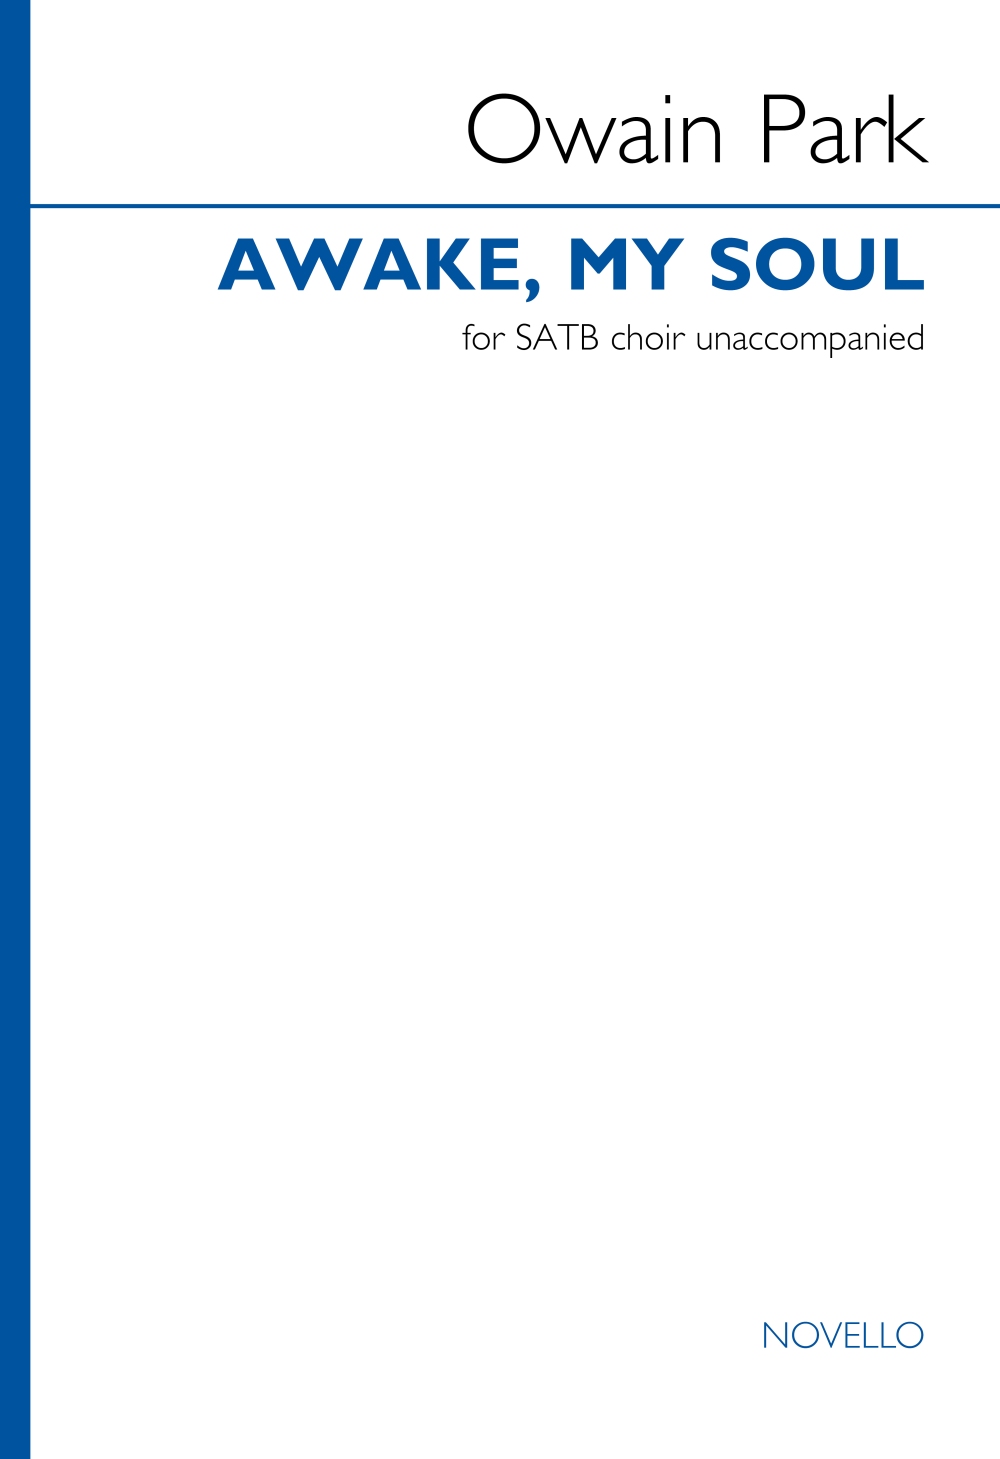 Owain Park: Awake  my soul: Mixed Choir A Cappella: Choral Score